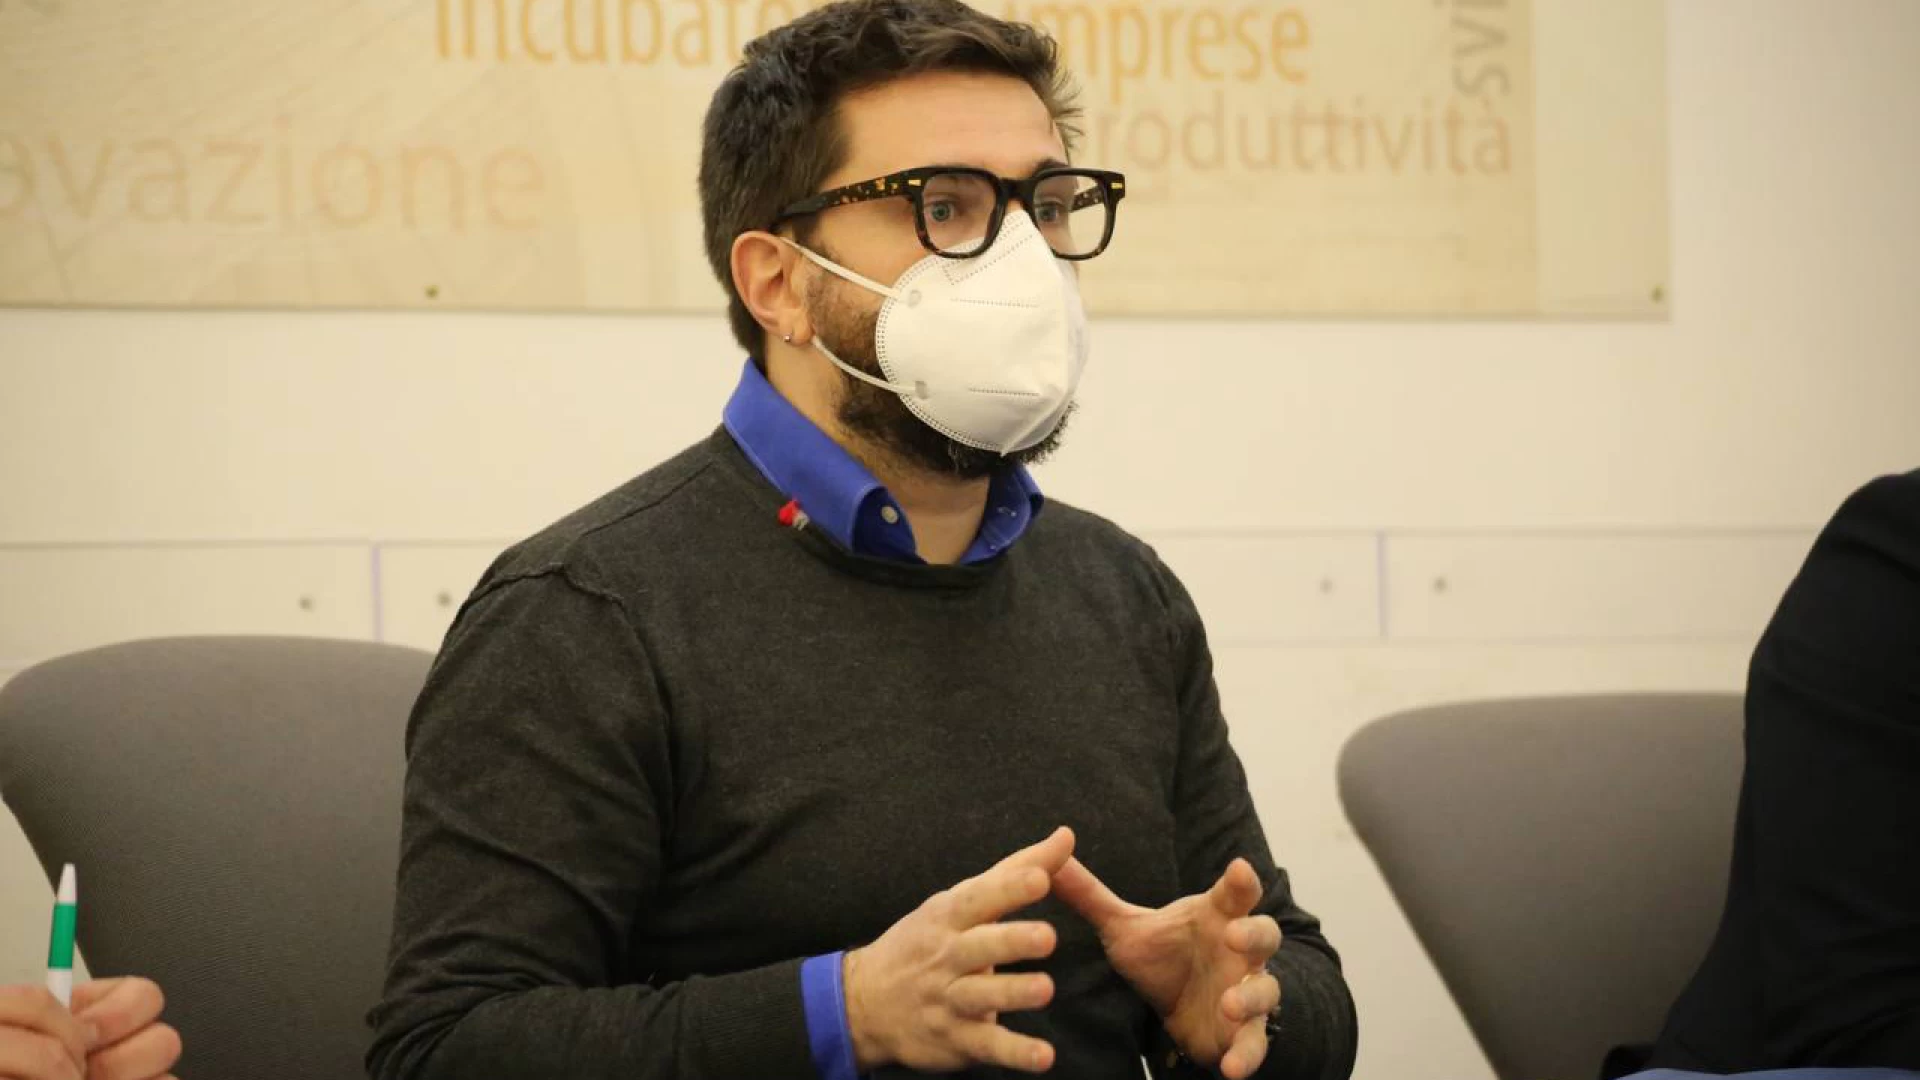 Ambiente, Federico-M5S: "La Regione Molise rischia di perdere le risorse del MITE per il miglioramento della qualità dell'aria. Nuove analisi in corso a Venafro".